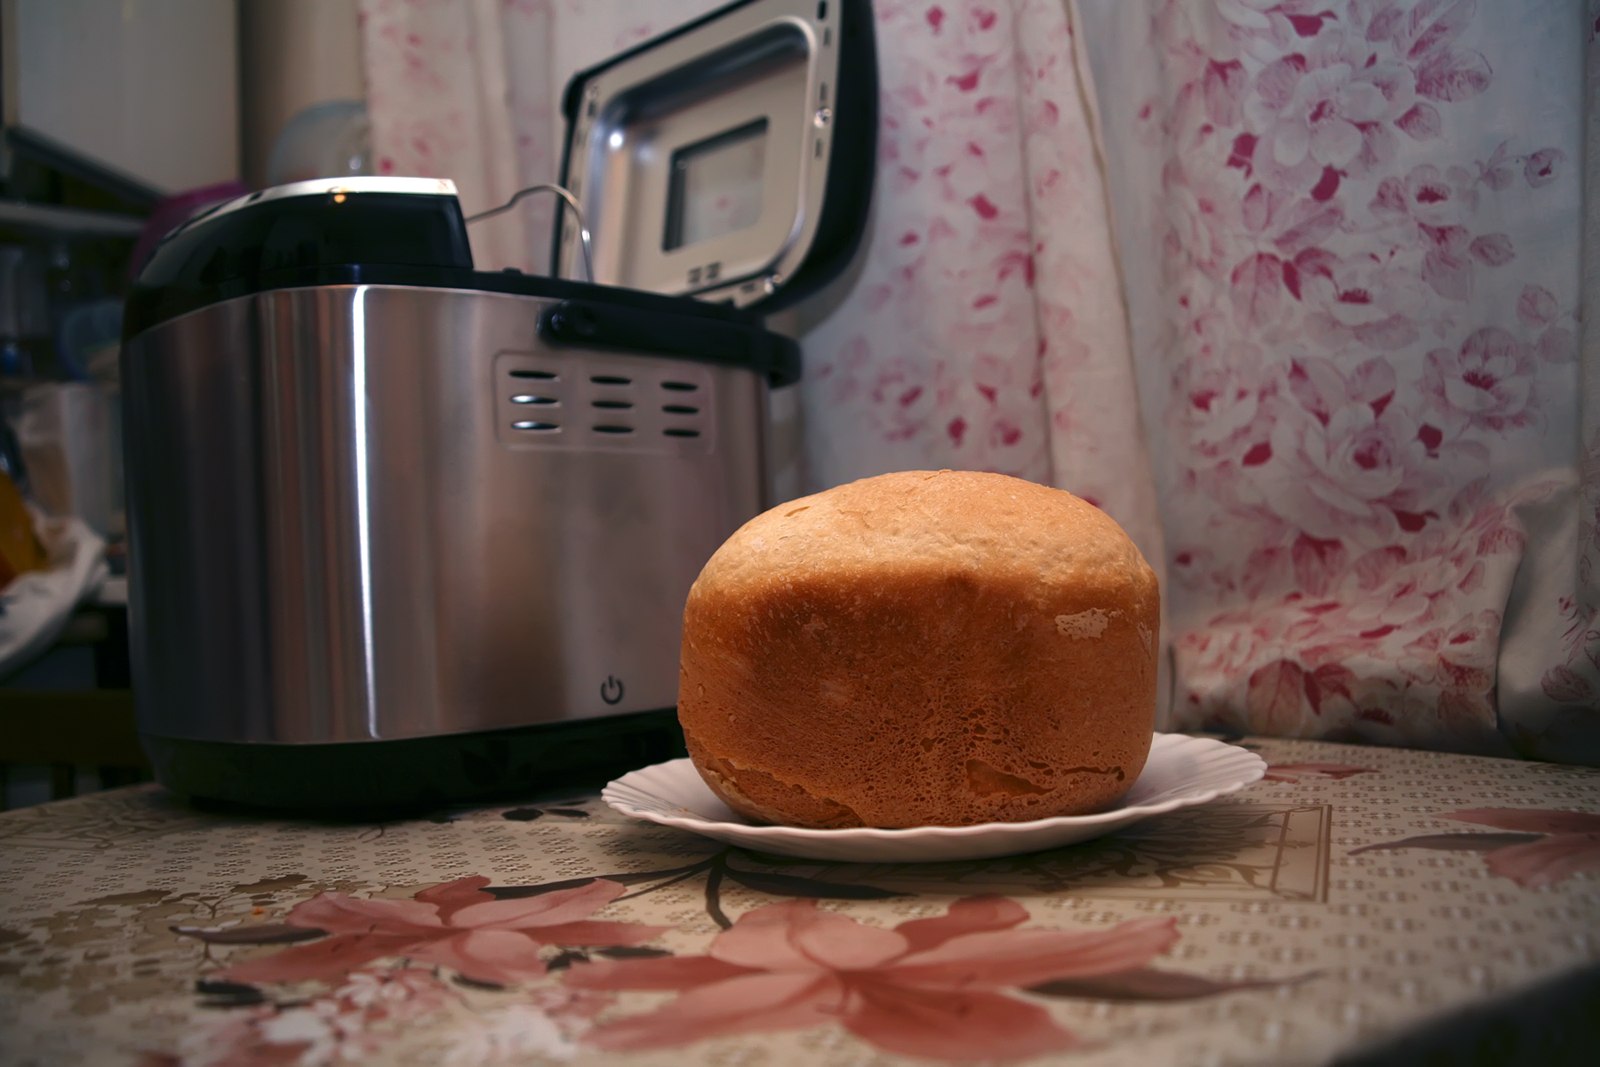 Видео рецепт хлебопечки. Хлеб в хлебопечке. Хлеб из хлебопечки. Выпекание хлеба в хлебопечке. Домашний хлеб в хлебопечке.